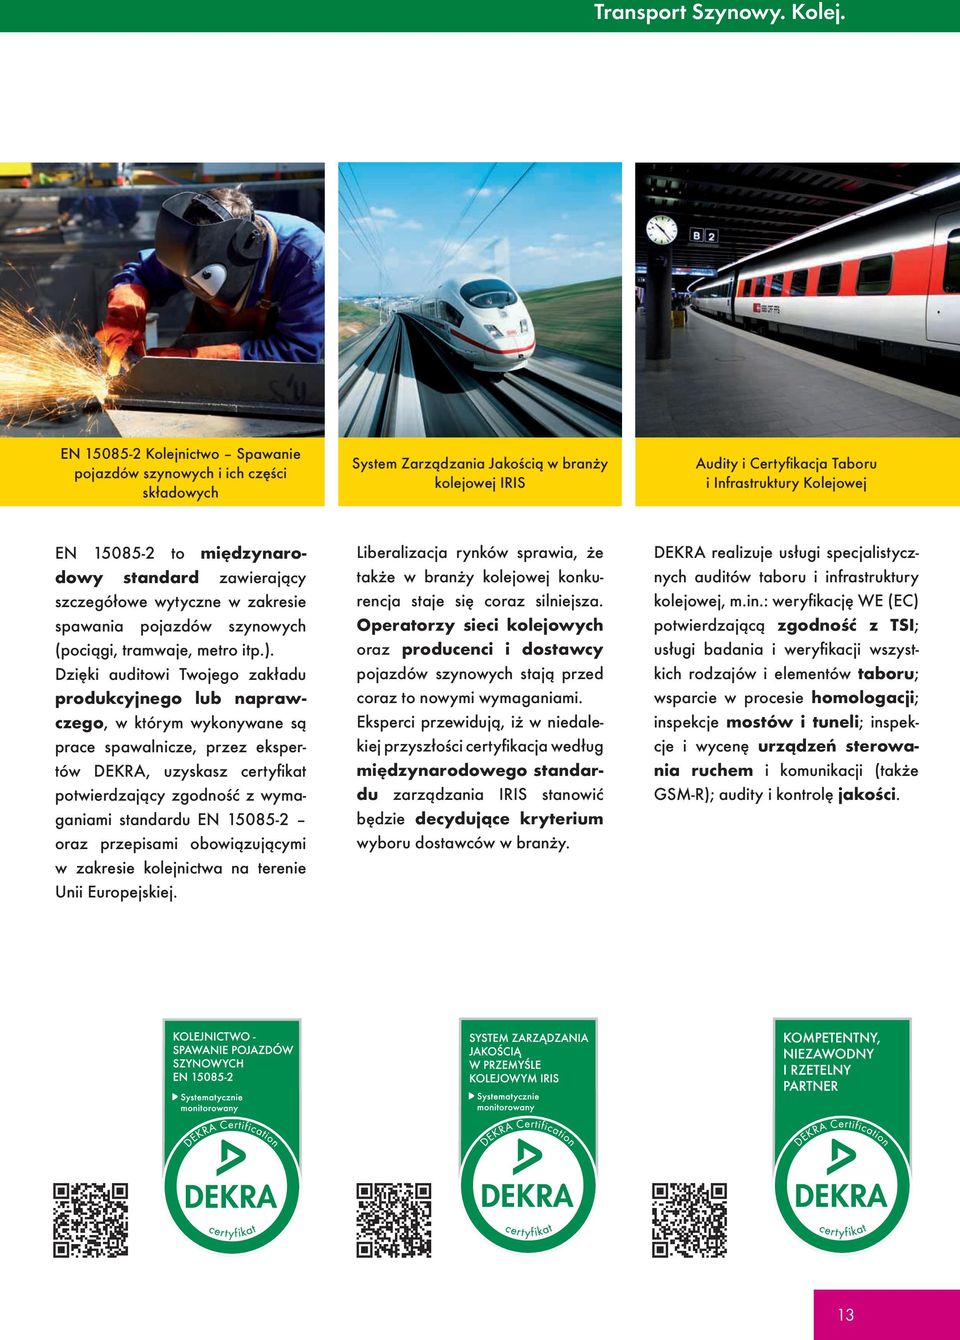 międzynarodowy standard zawierający szczegółowe wytyczne w zakresie spawania pojazdów szynowych (pociągi, tramwaje, metro itp.).